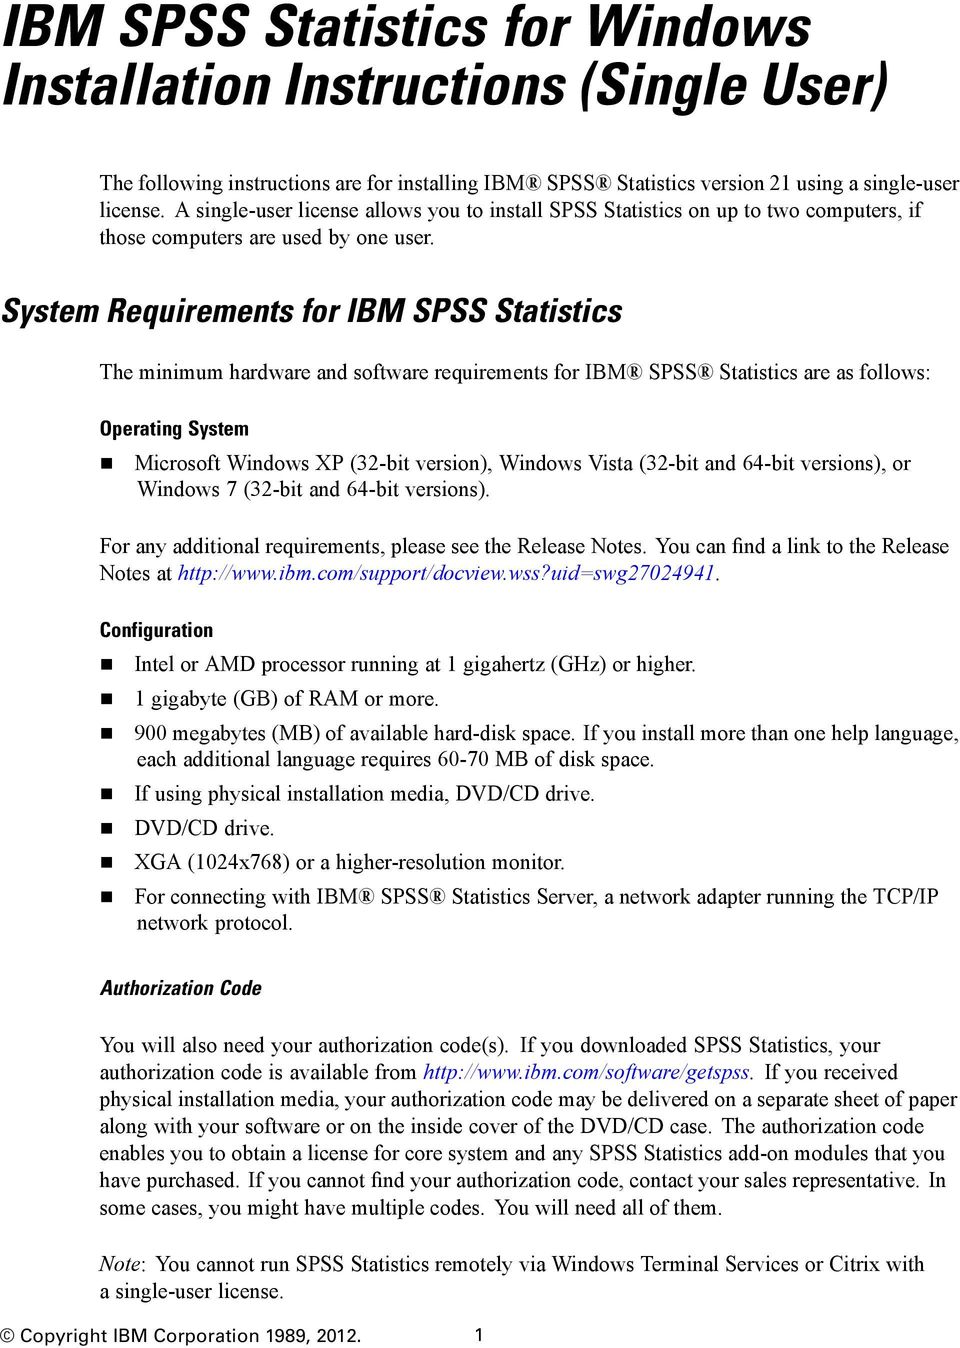 IBM SPSS Statistics V21 x64